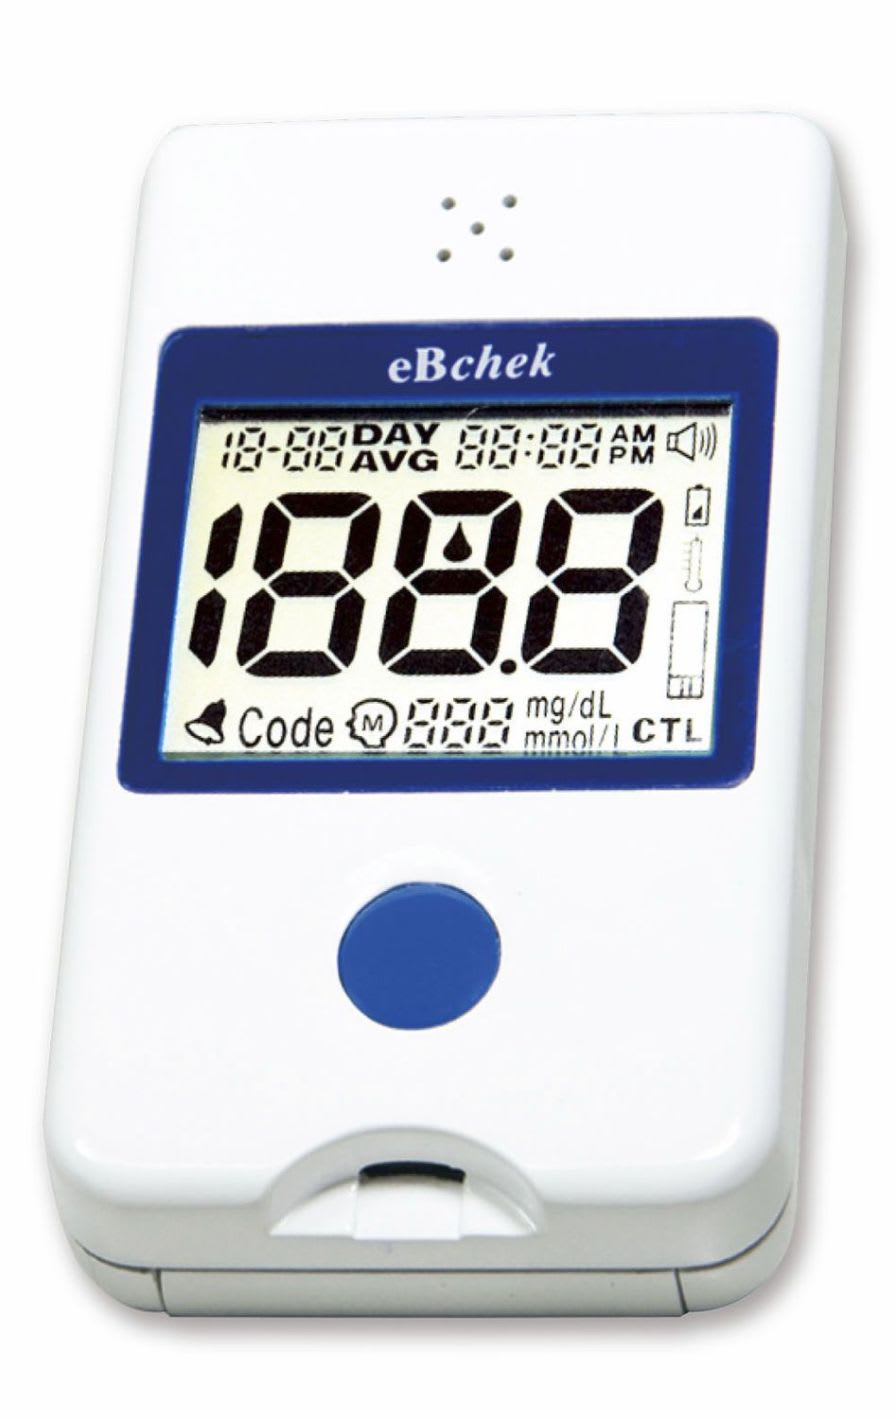 Blood glucose meter with speaking mode 20 - 600 mg/dL | eBchek Visgeneer Inc.